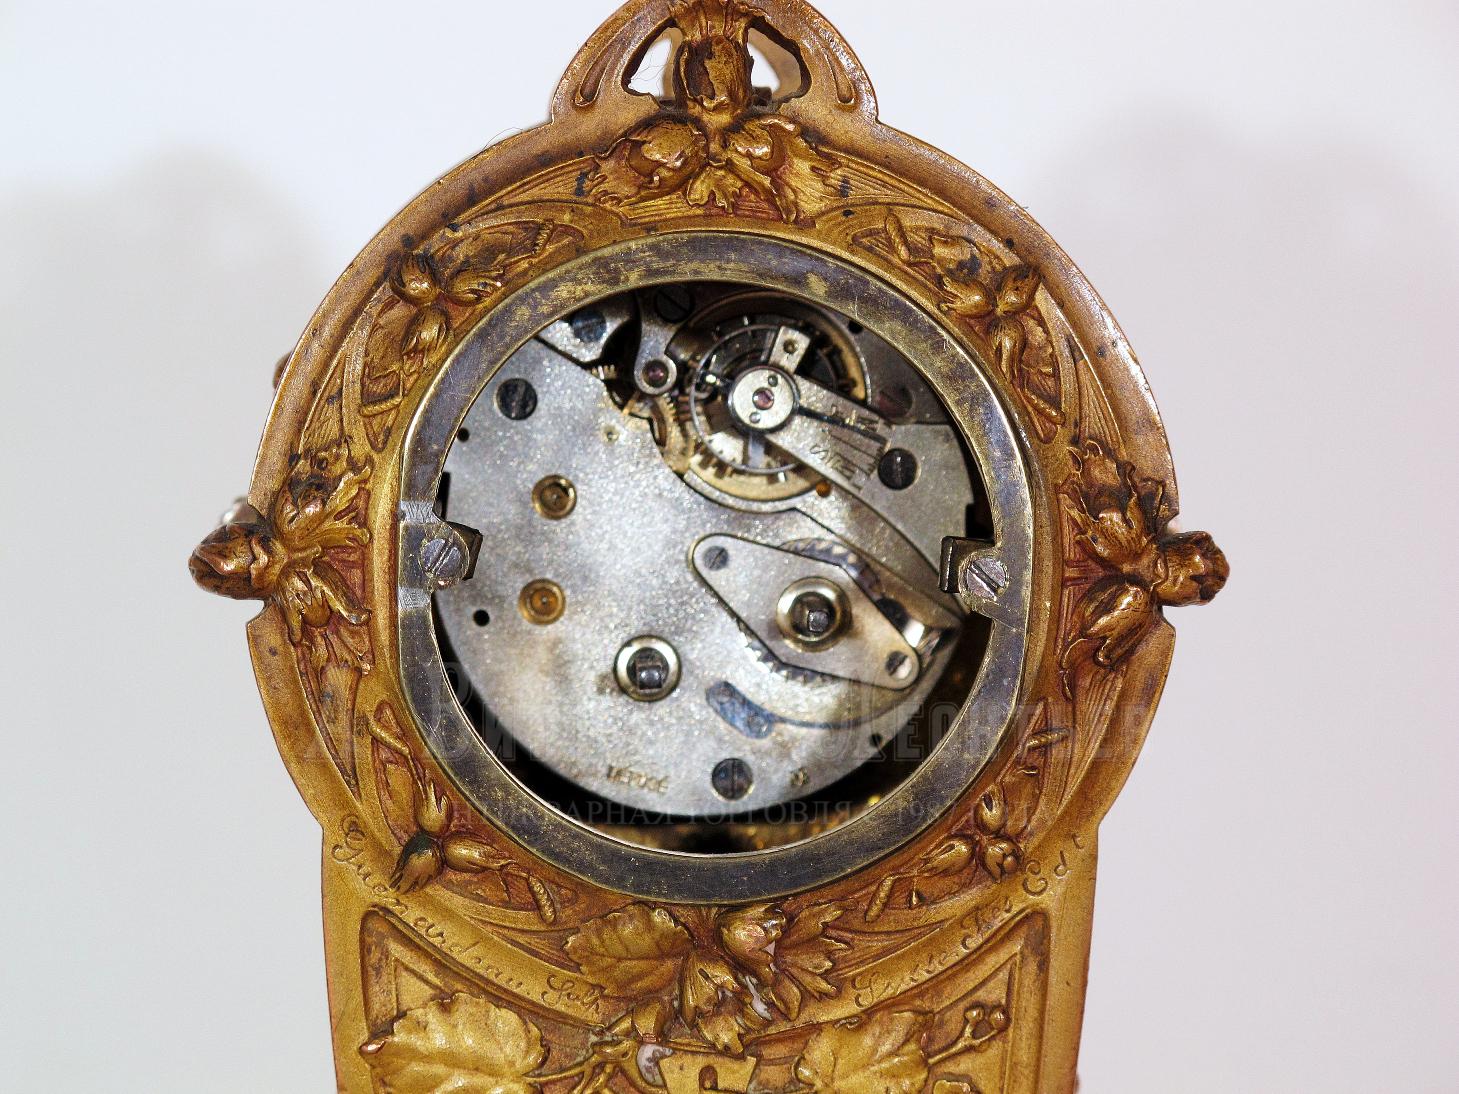 Миниатюрные антикварные настольные часы - Sem Guenardeau